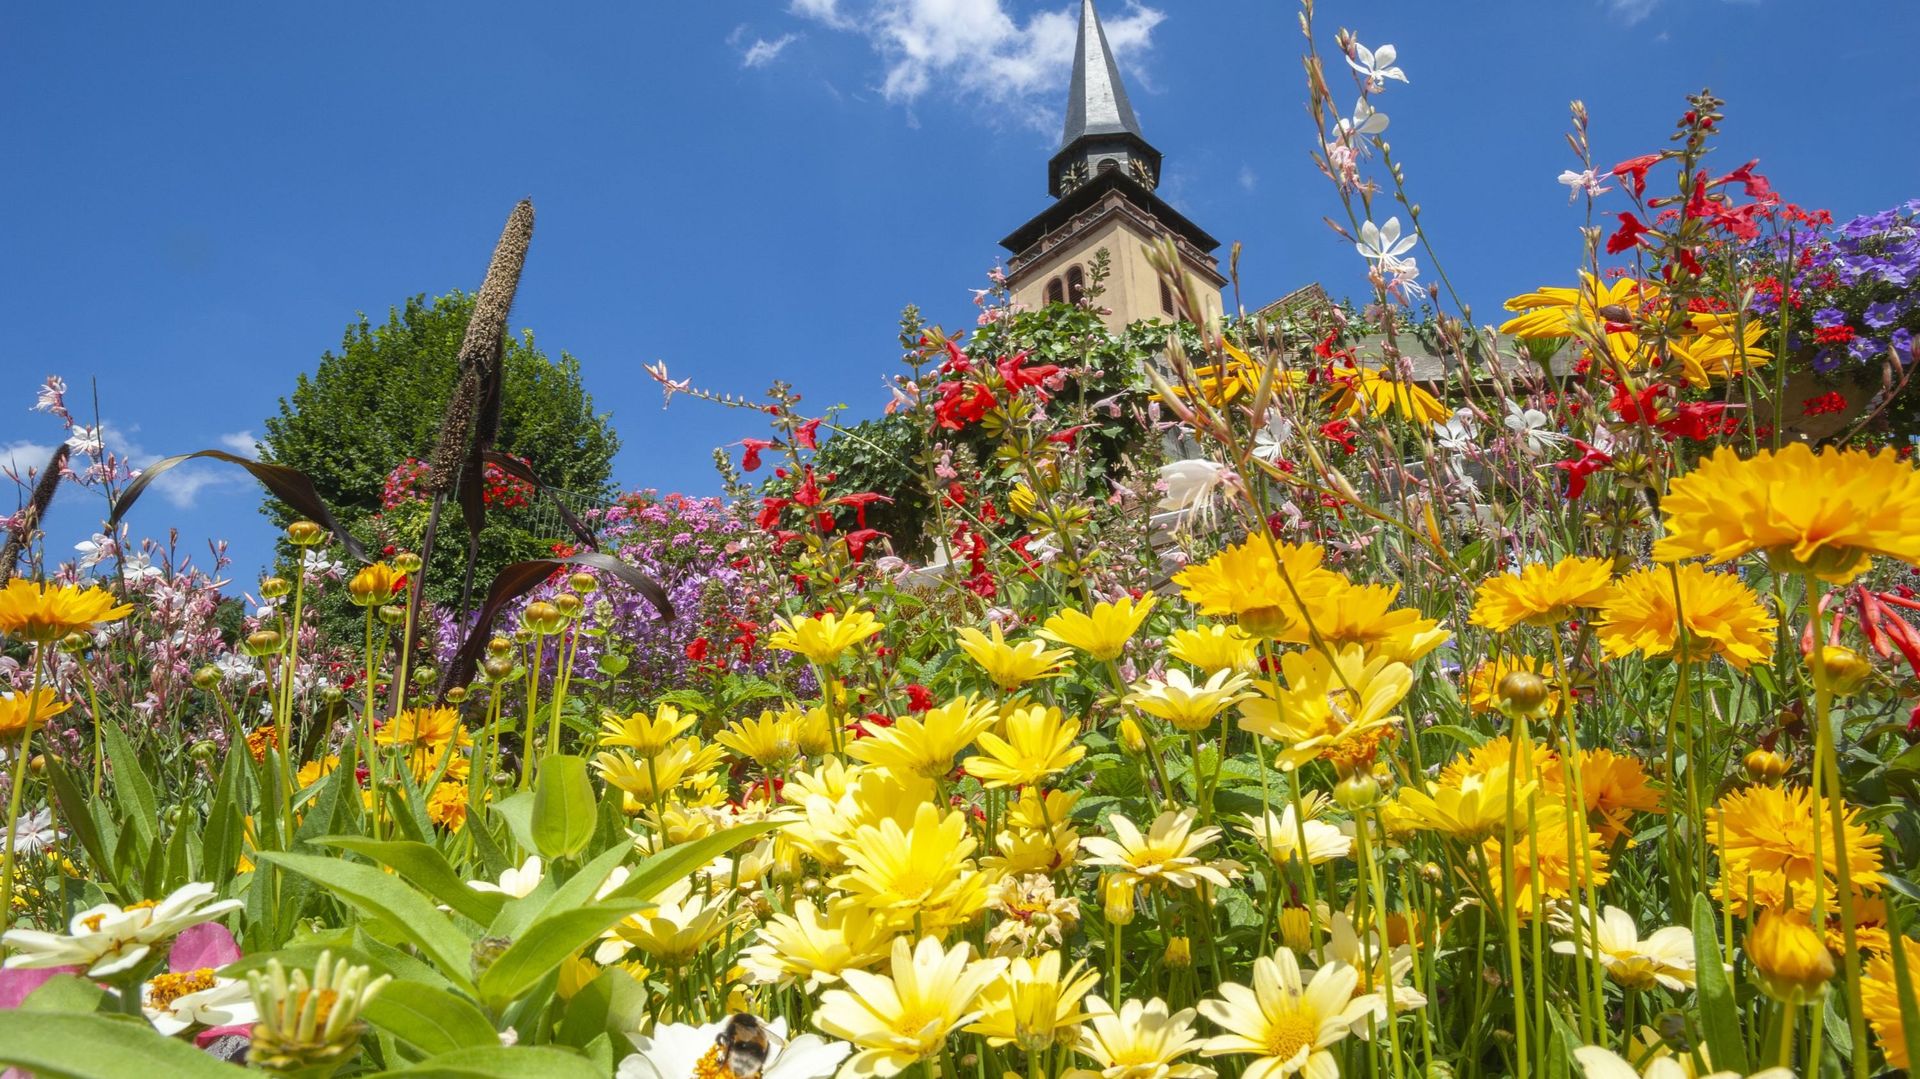 Au sud de Colmar, le village de Eguisheim est un des plus beaux villages du vignoble
Alsacien. Eguisheim a régulièrement obtenu les quatre fleurs des plus beaux villages fleuris.